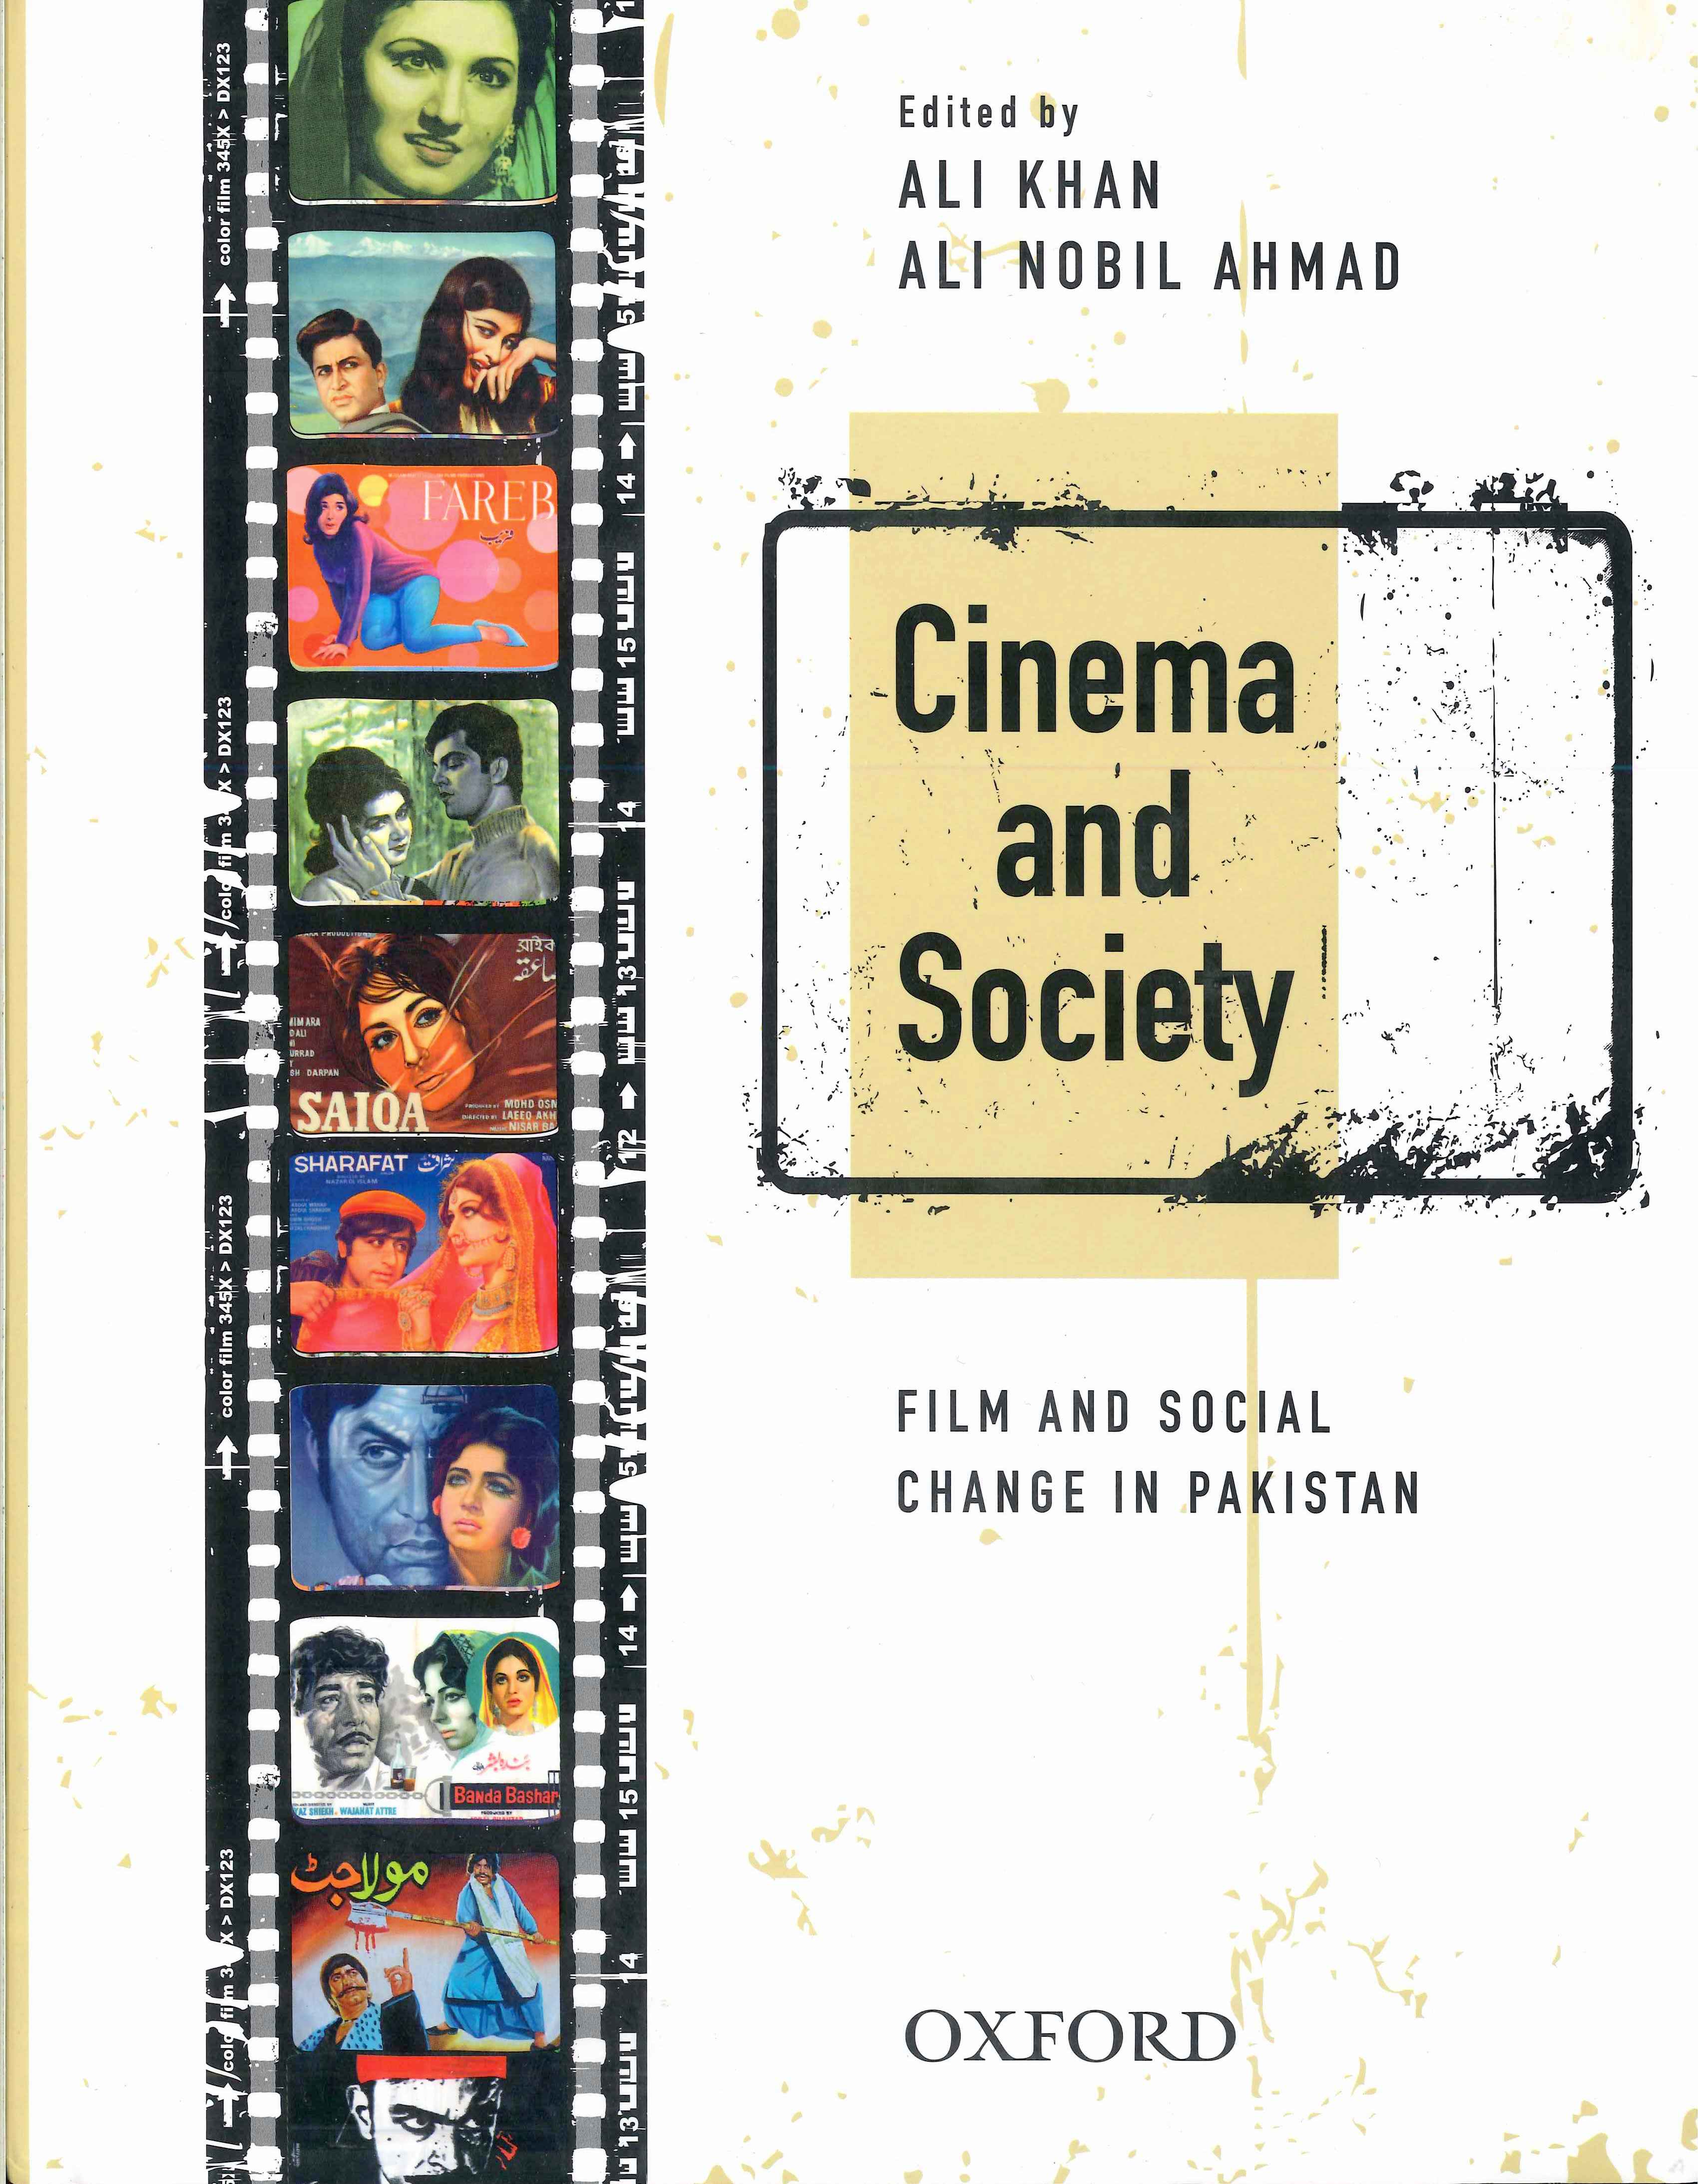 Pakistani cinema